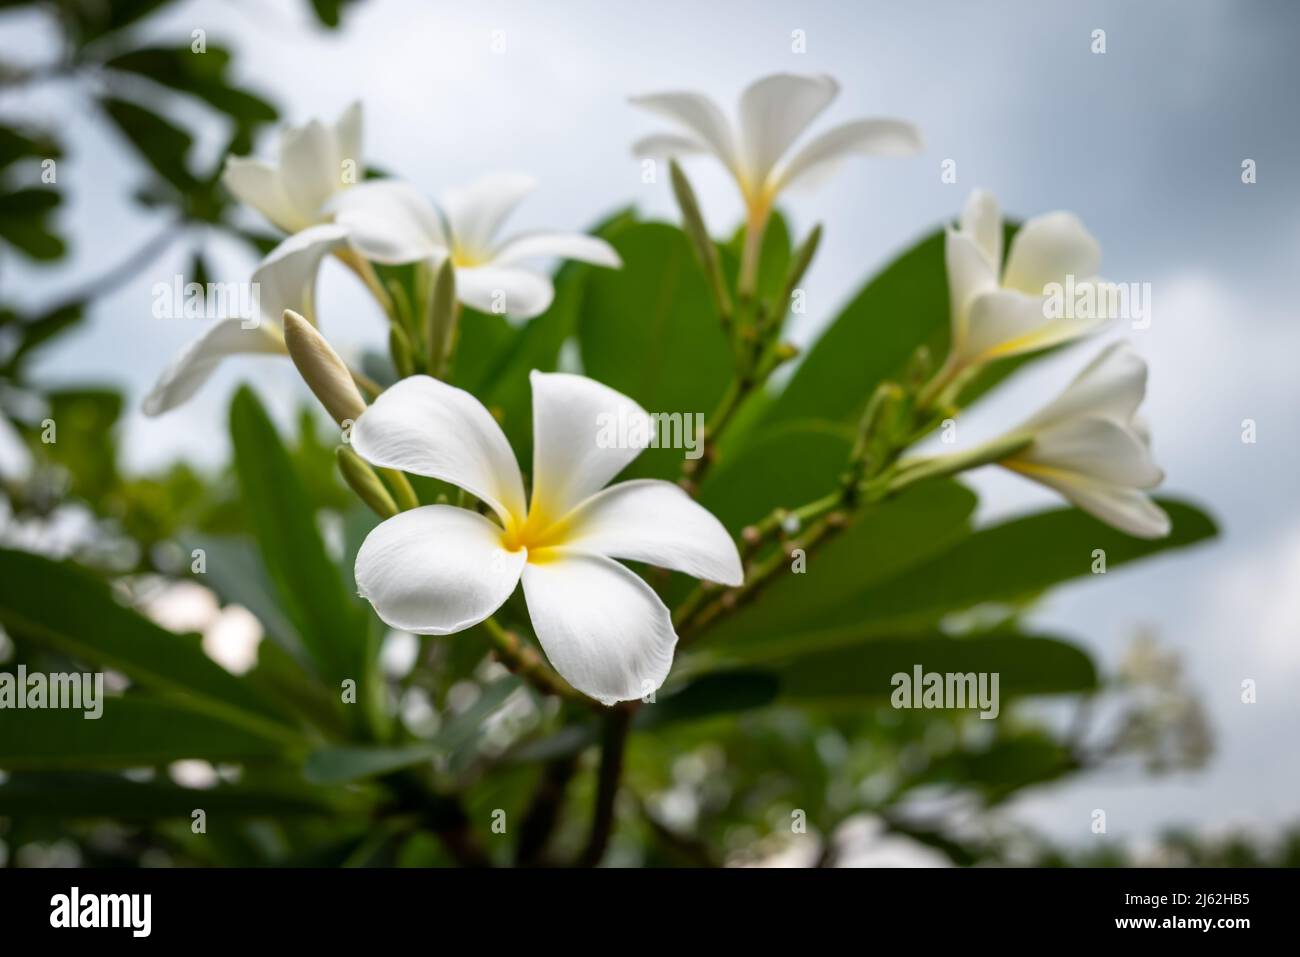 Plumeria est des arbres endémiques du Mexique et de la Thaïlande et la fleur nationale du Laos. Arbre blanc de Temple avec fond vert de feuille dans le jardin. Banque D'Images